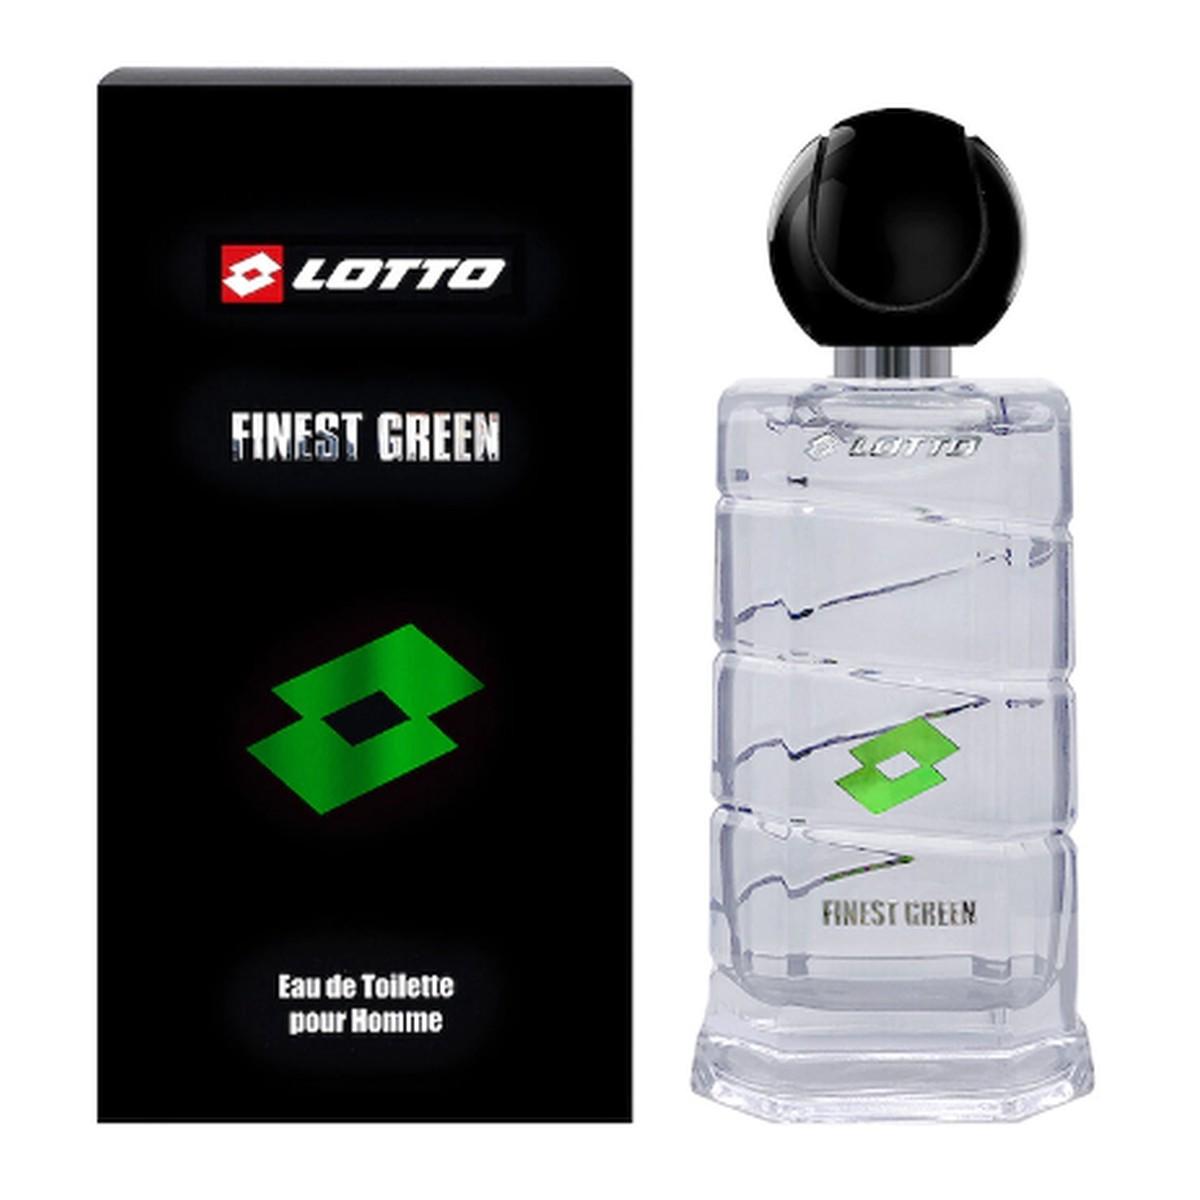 Finest Green 100 ml